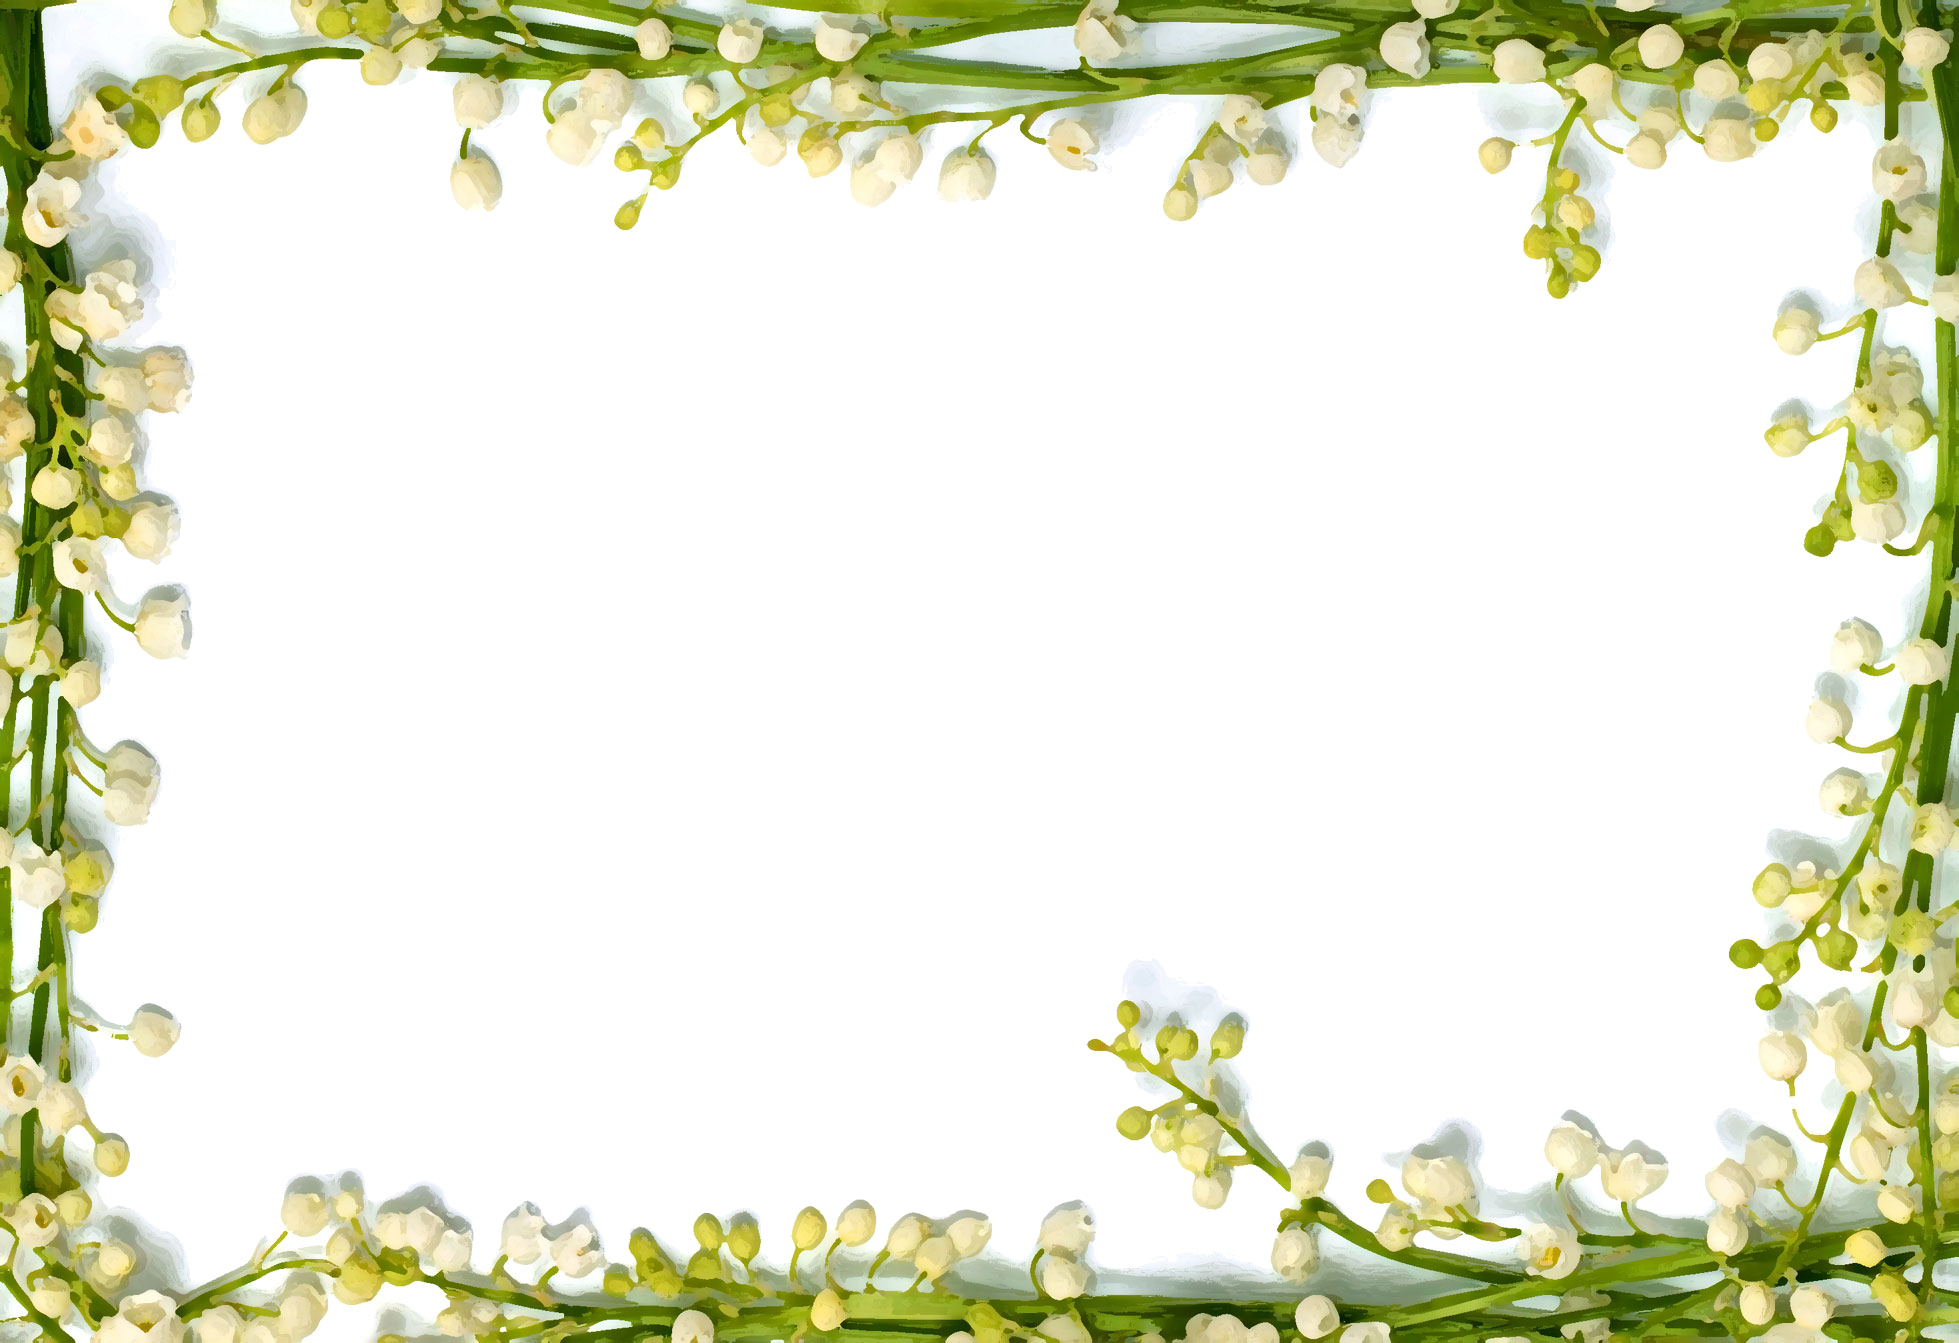 リアルな花のイラスト フリー素材 フレーム枠no 1371 スズラン 白 茎の窓